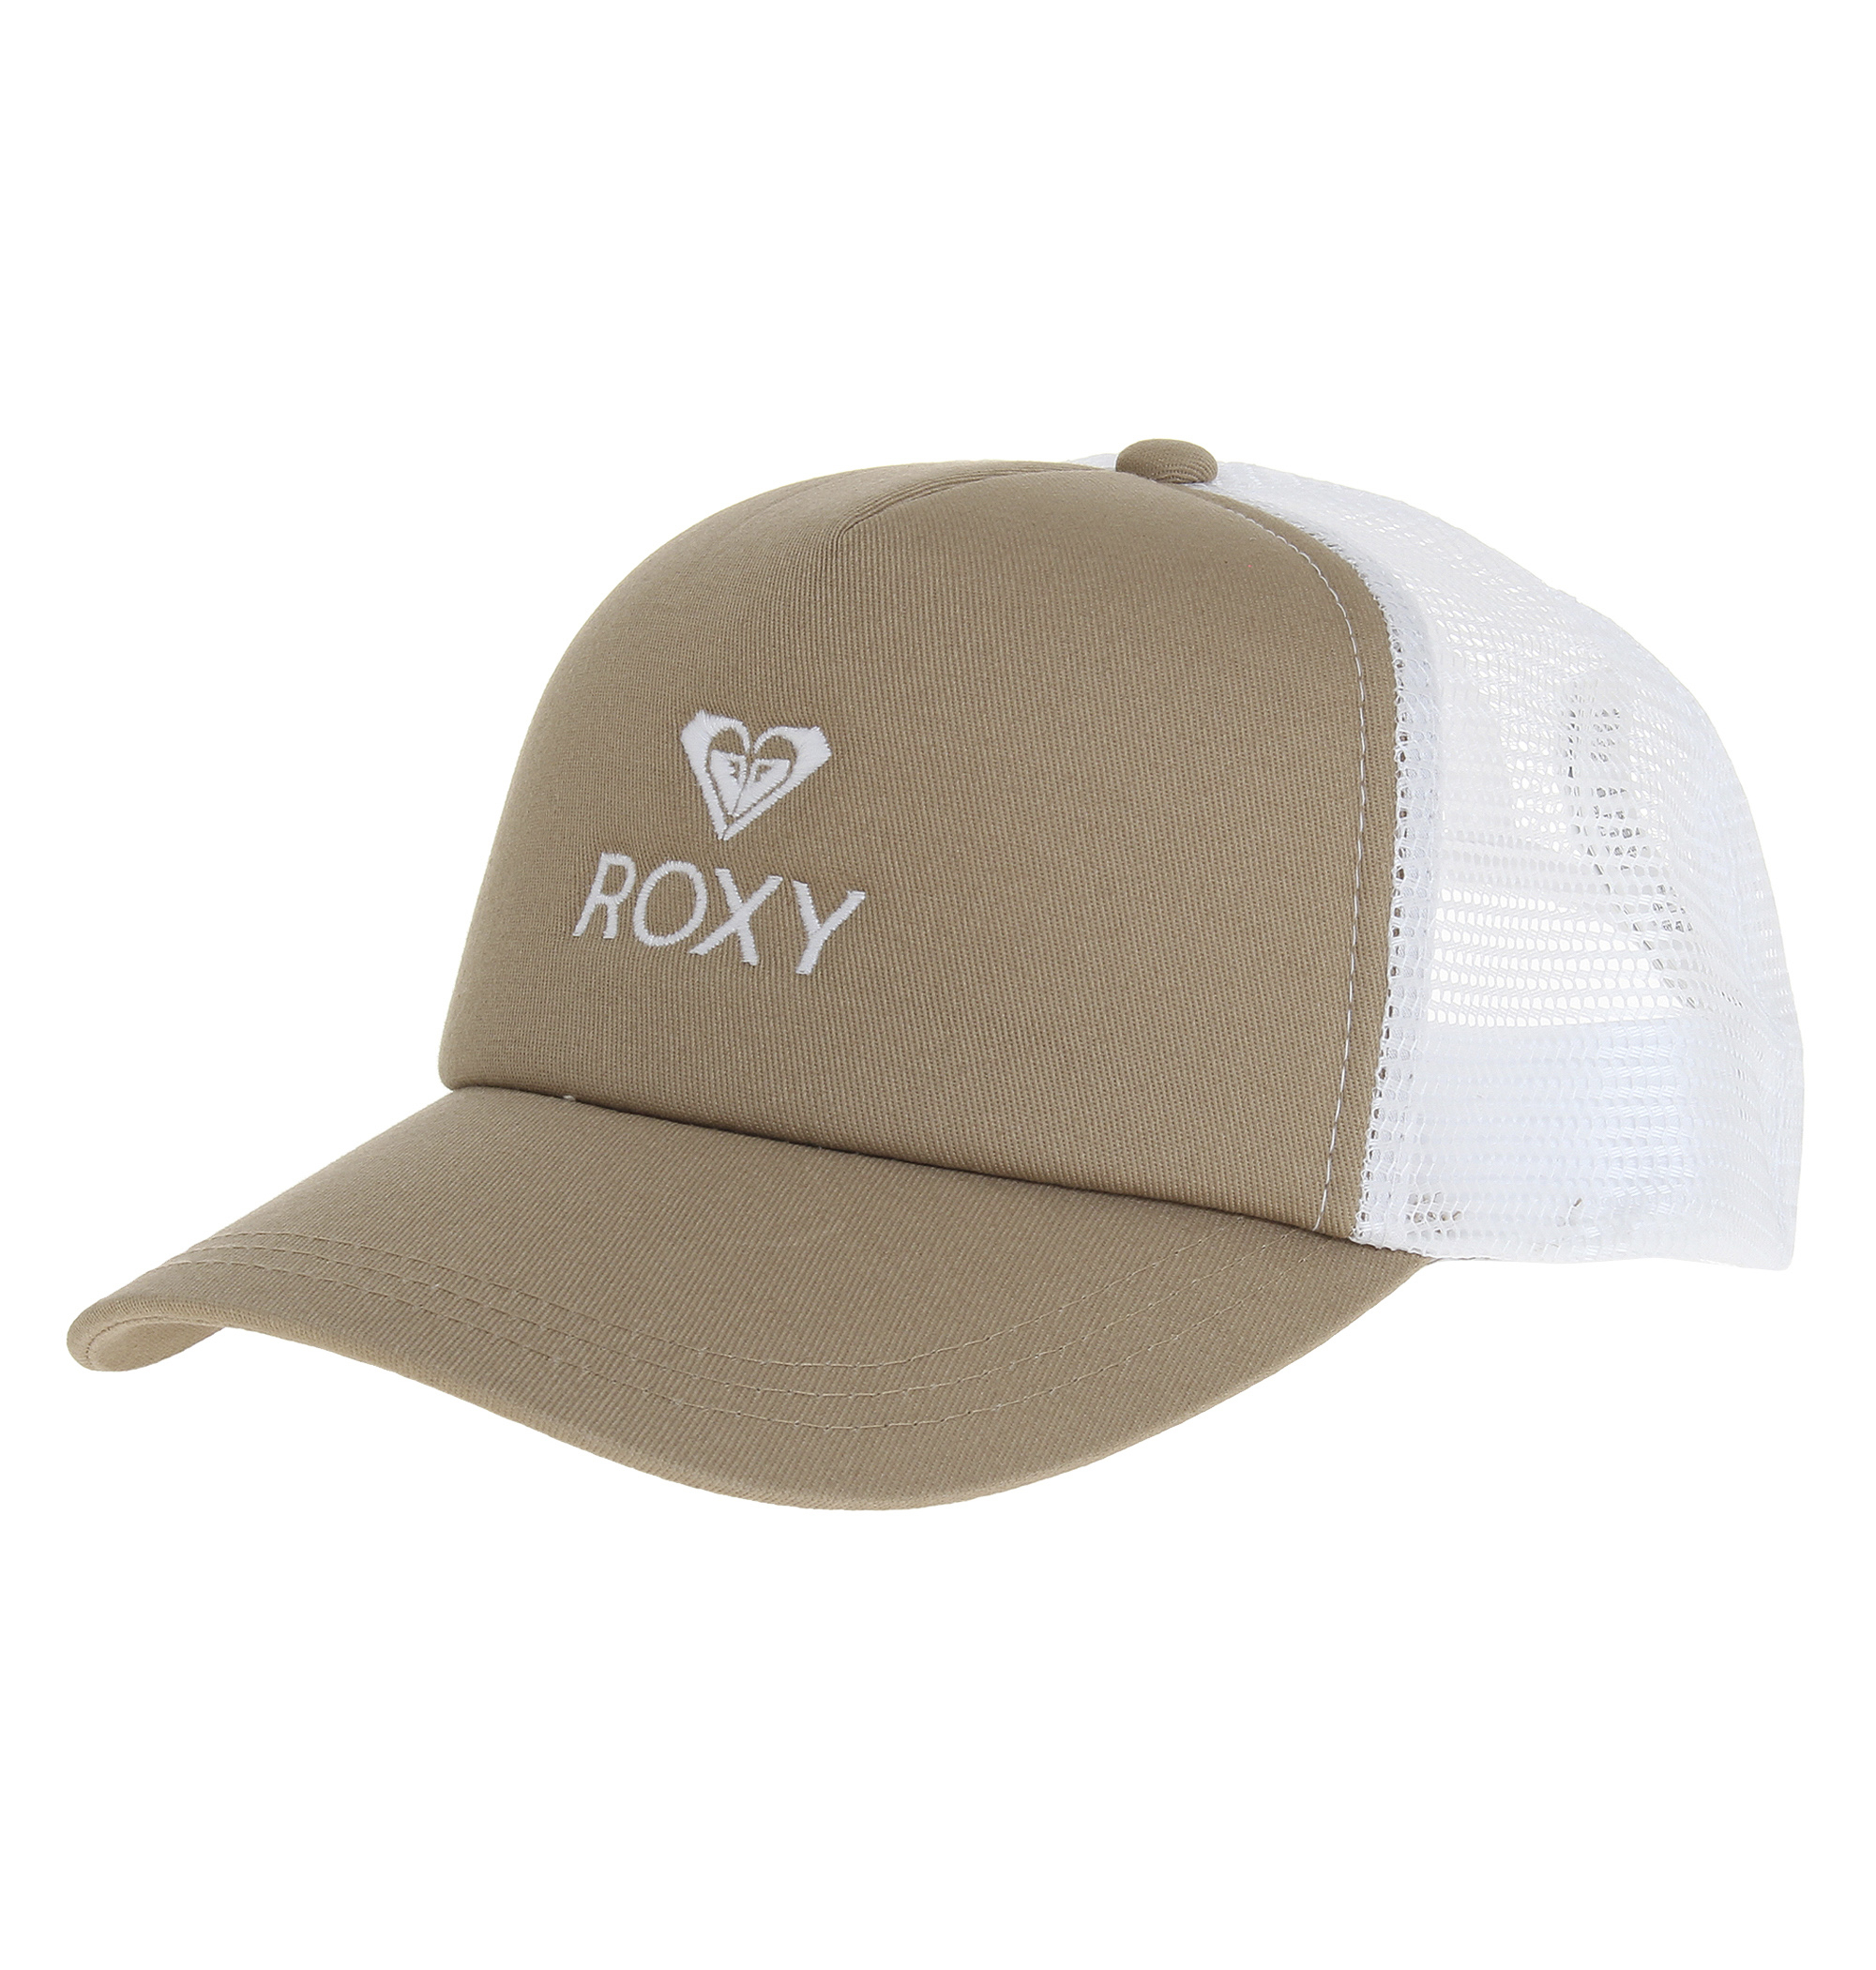 ＜Roxy＞YOURS フロントのブランドアイコンとロゴがさりげないアクセントのスポーティなキャップ